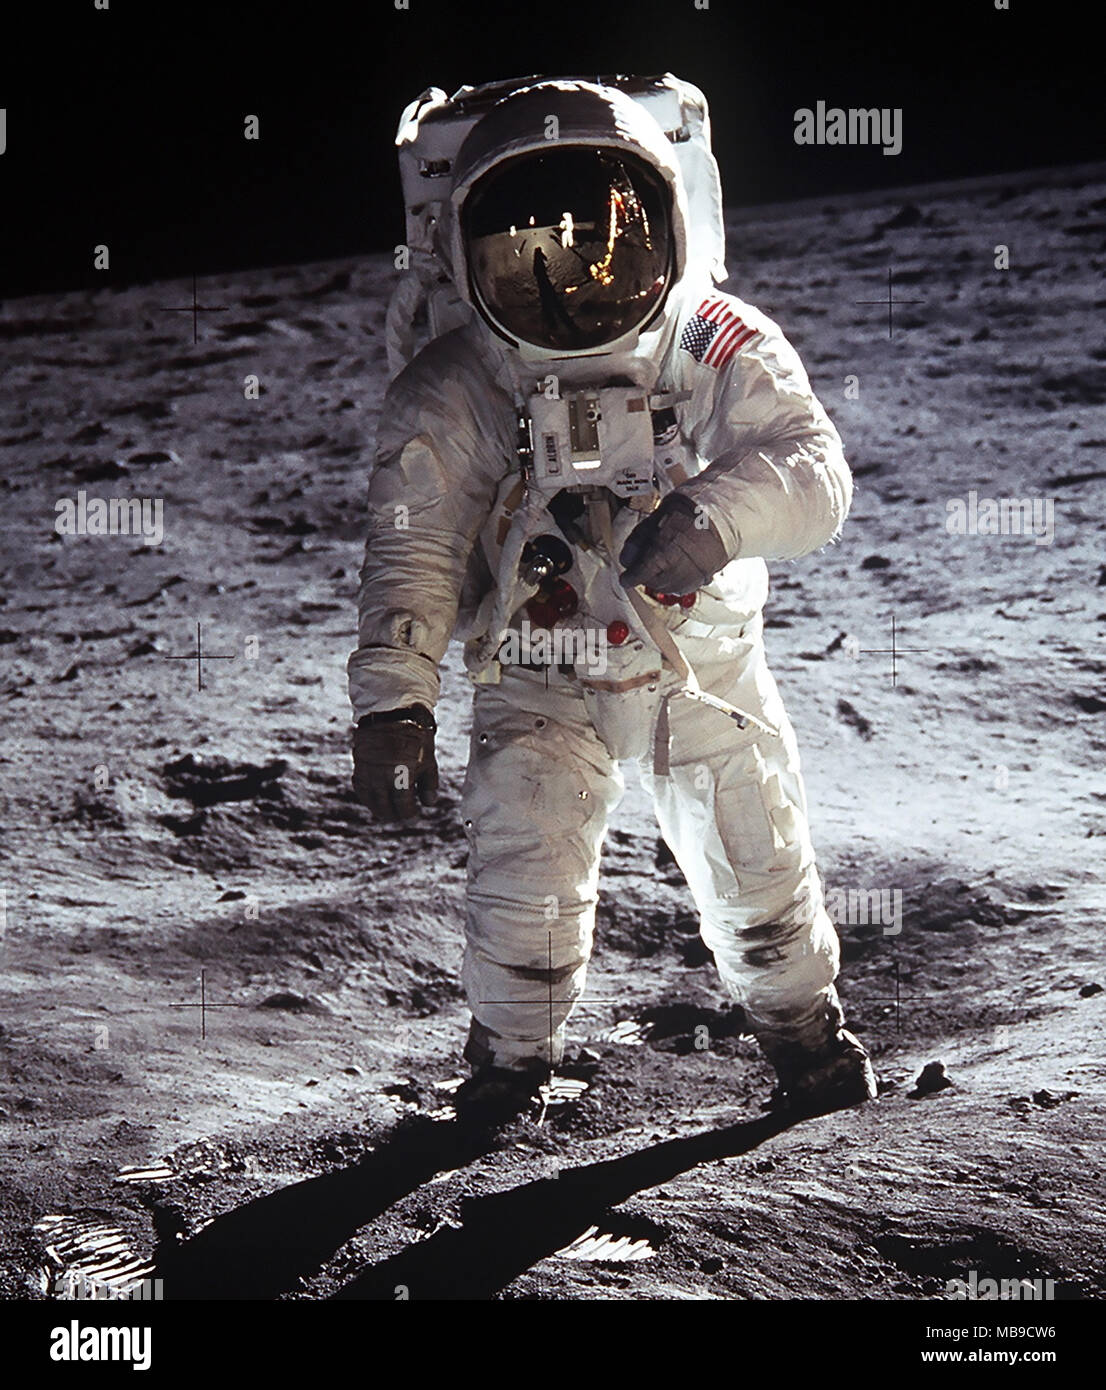 Lebensgrosse Pappaufsteller mit 25cm x 20cm foto Buzz Aldrin Mond-Landung